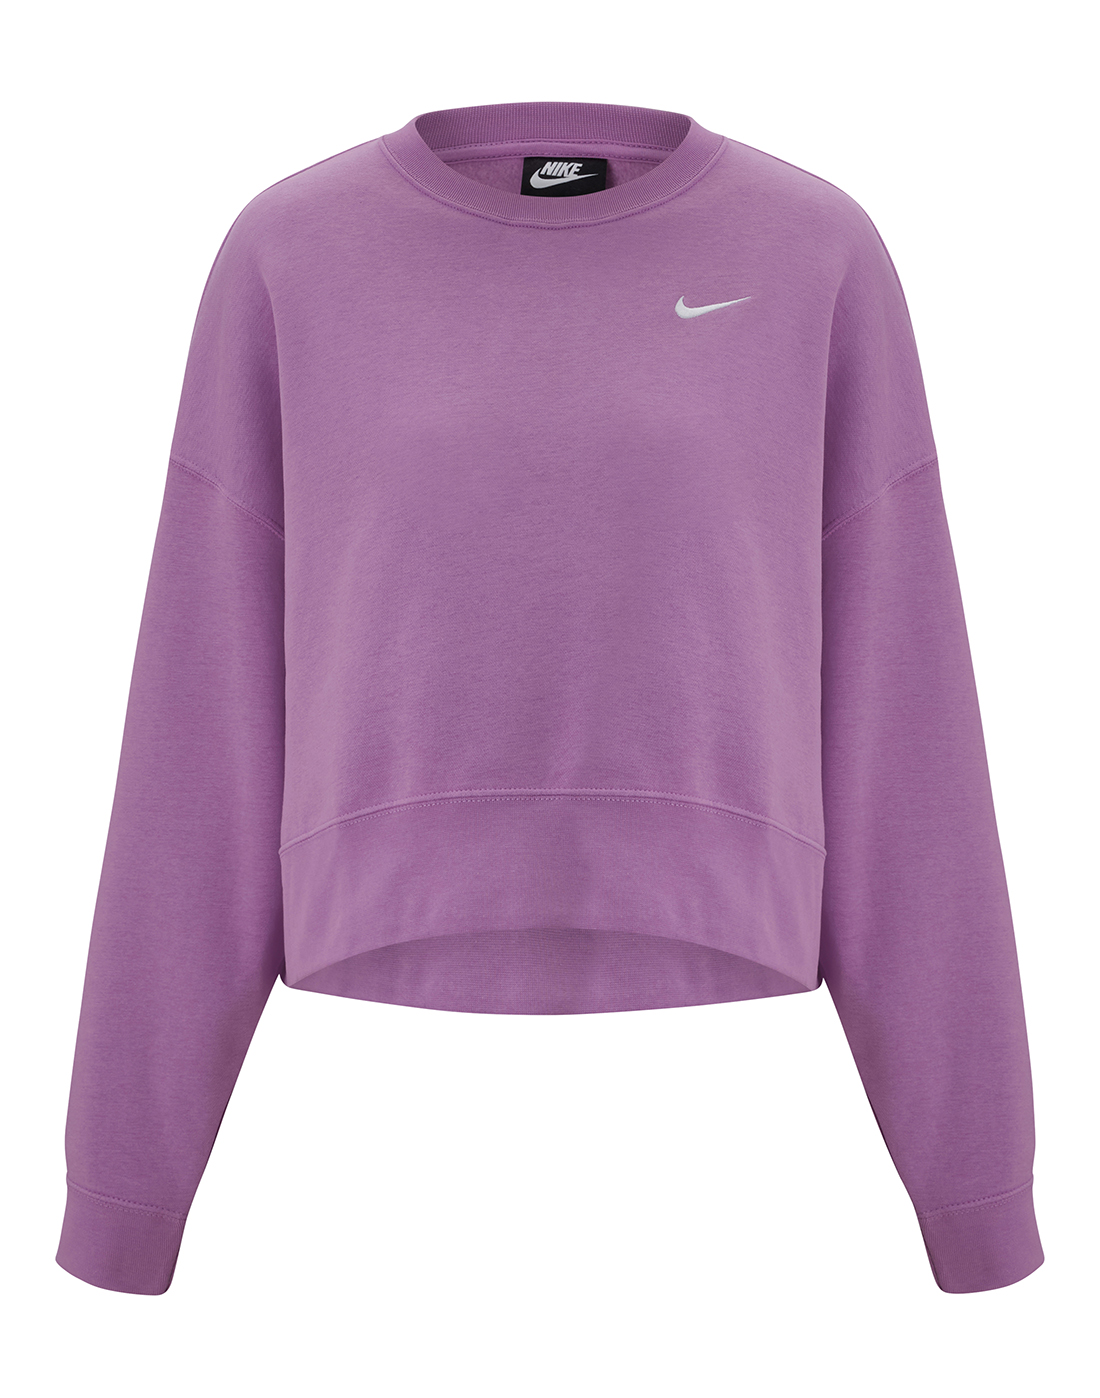 Nike Womens Fleece Crewneck Trend Sweatshirt - Purple | Life Style ...